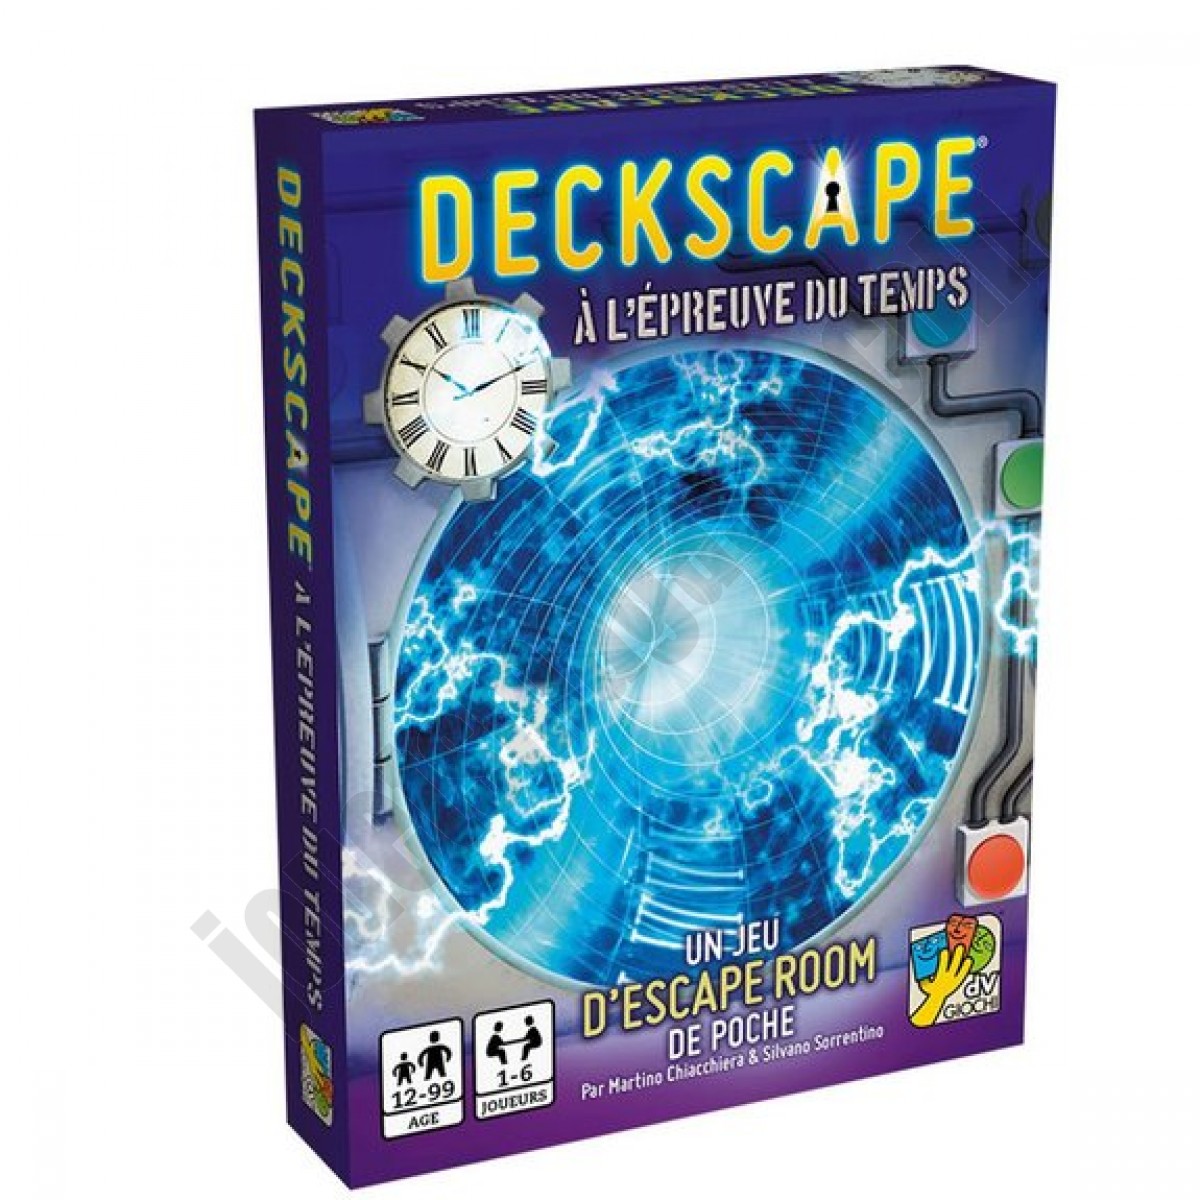 Deckscape : A l'épreuve du temps ◆◆◆ Nouveau - Deckscape : A l'épreuve du temps ◆◆◆ Nouveau